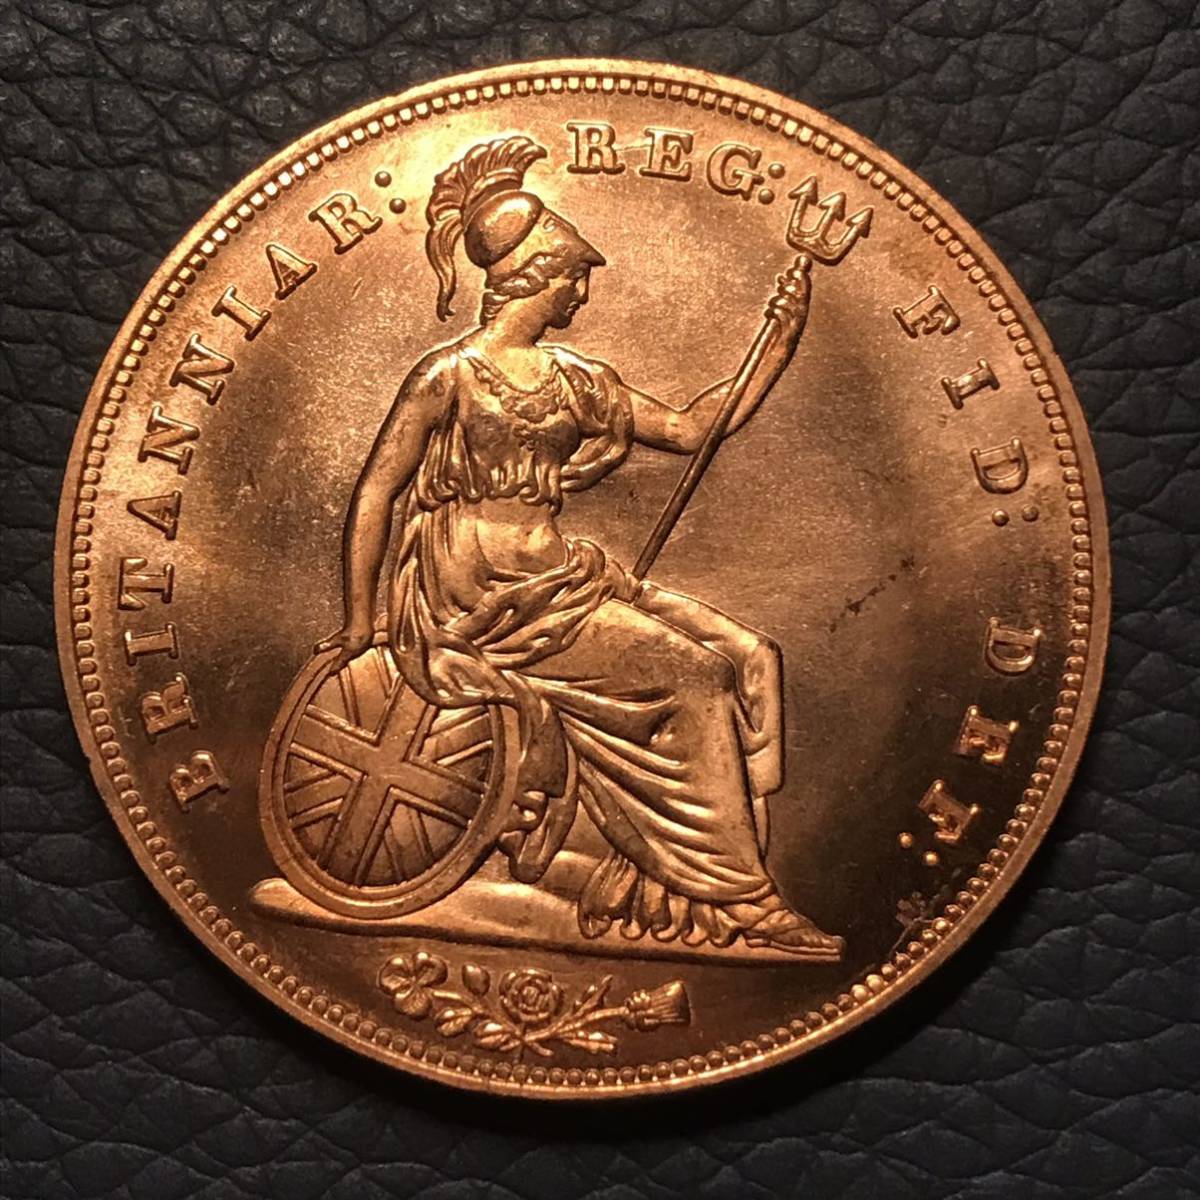 イギリス 銅貨 ヴィクトリア女王肖像 1856年 英国 ヤングヘッド 人物記念 古銭の画像1